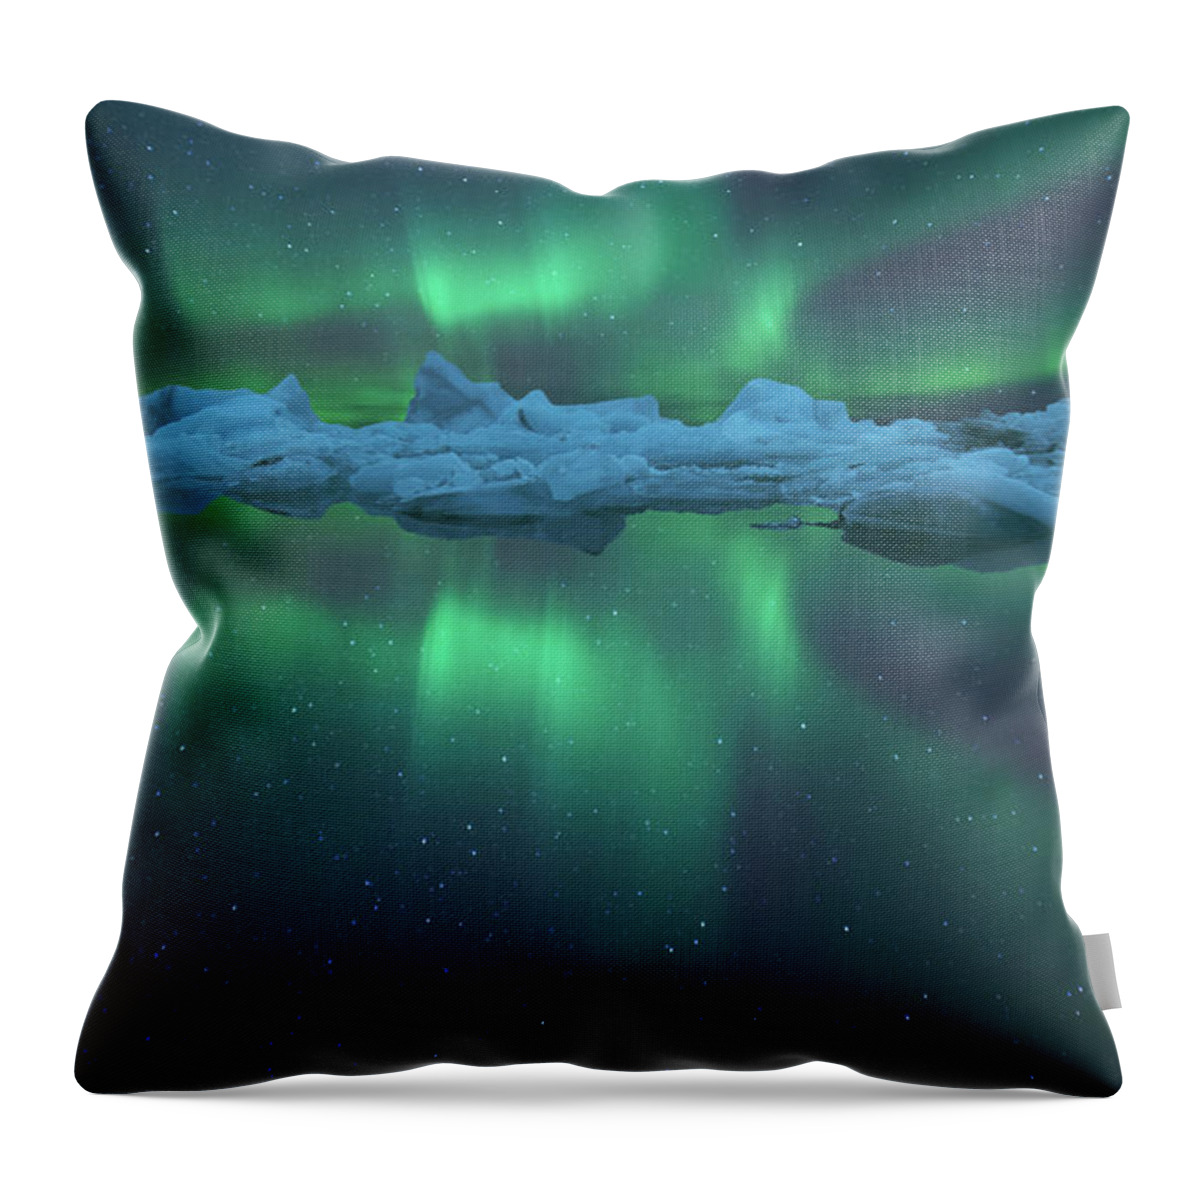 Scenics Throw Pillow featuring the photograph Aurora Reflection At Jokulsarlon by Peerakit Jirachetthakun